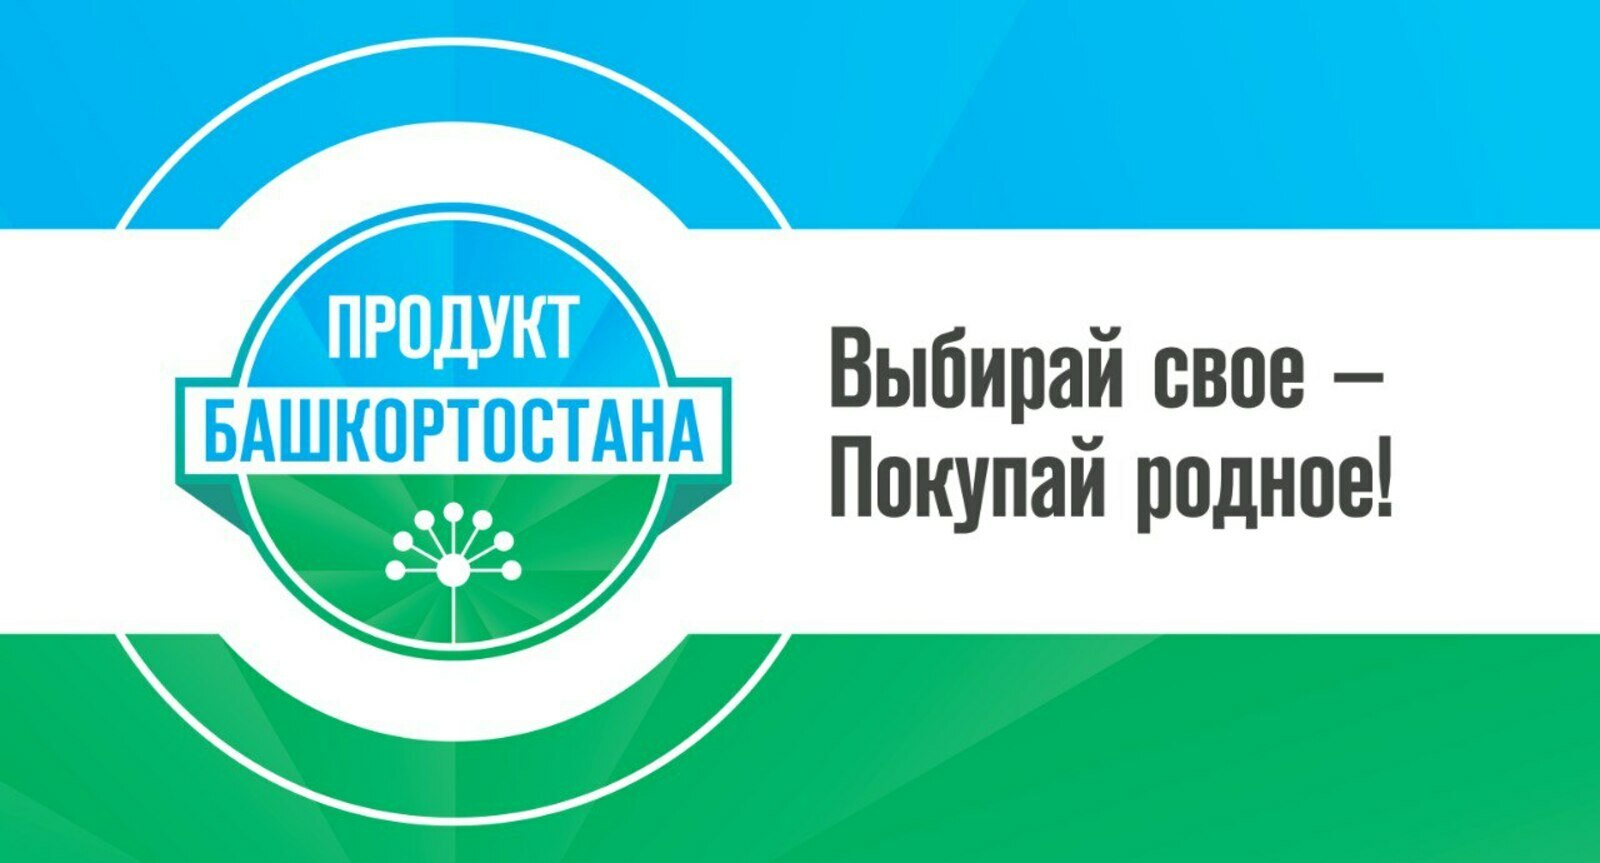 Проект «Продукт Башкортостана» отметил свое десятилетие